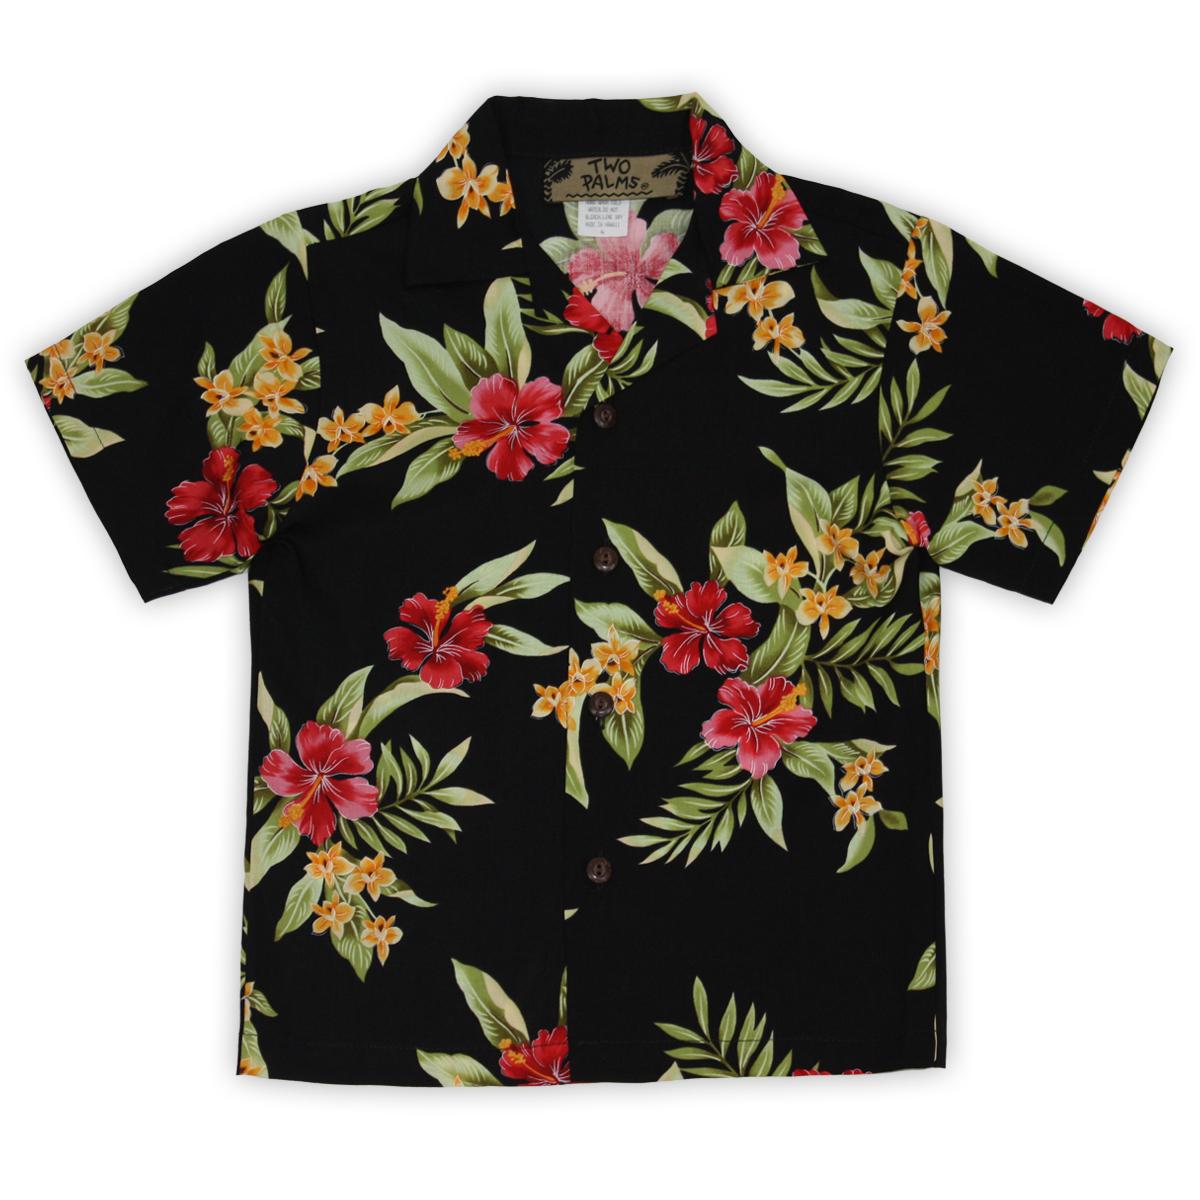 Boy's Hawaiian Shirt - Enchanted Evening Black